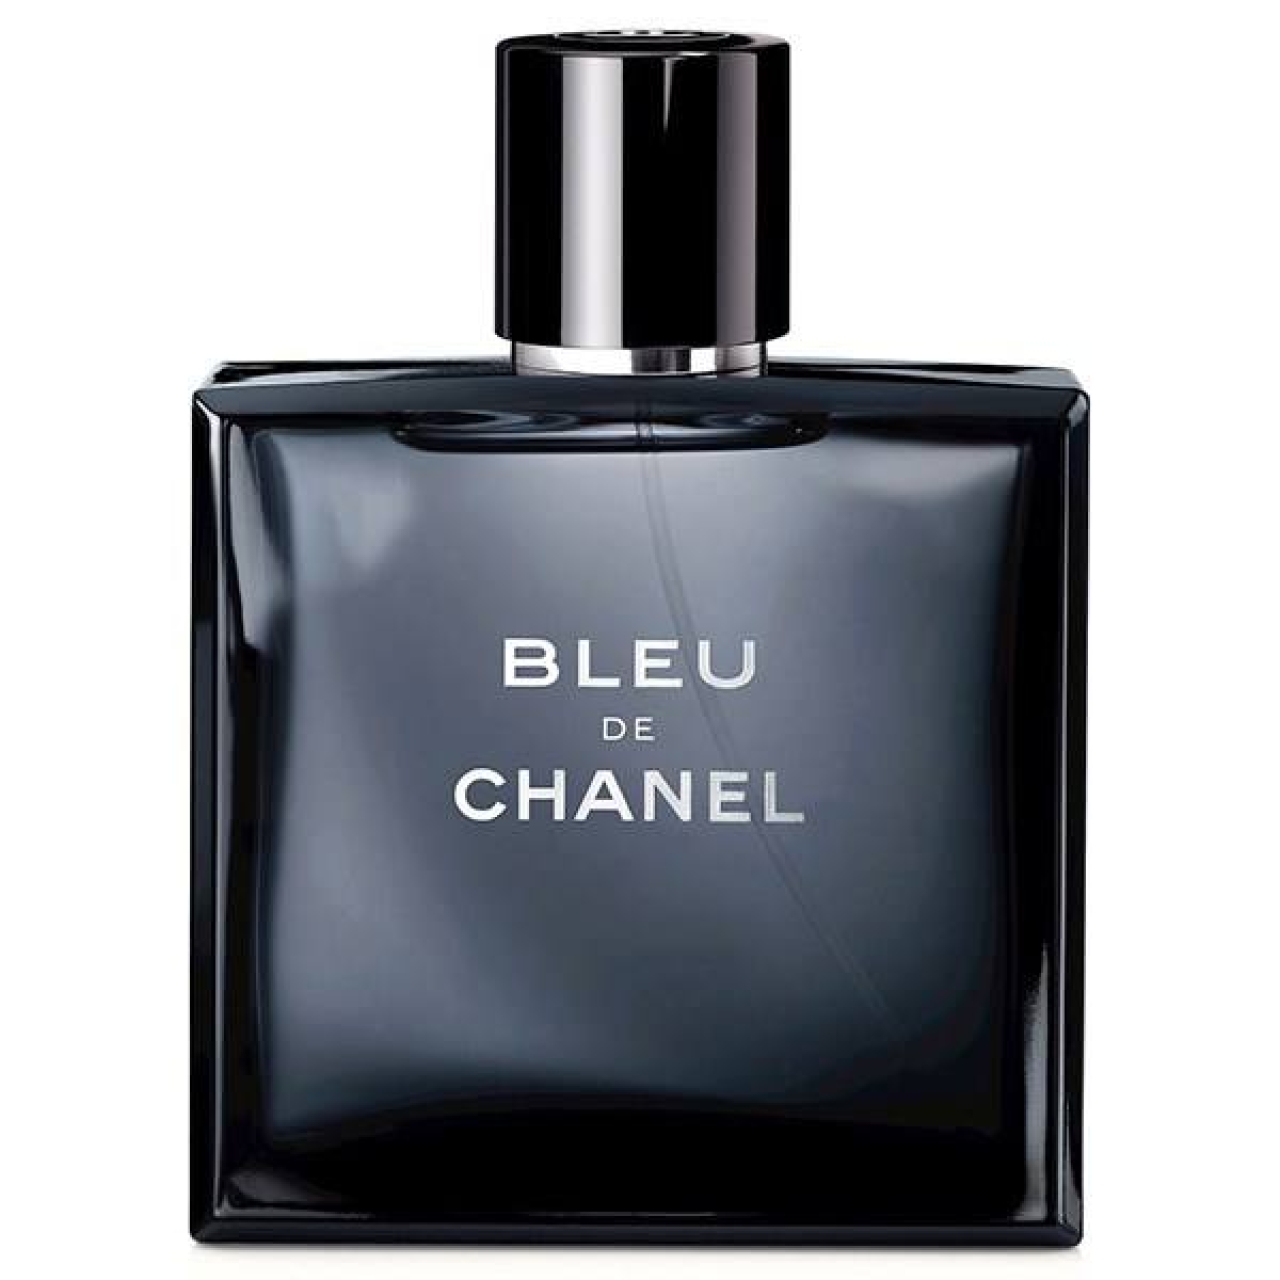 ادو تویلت مردانه مدل شانل Bleu de Chanel حجم 100 میلی لیتر